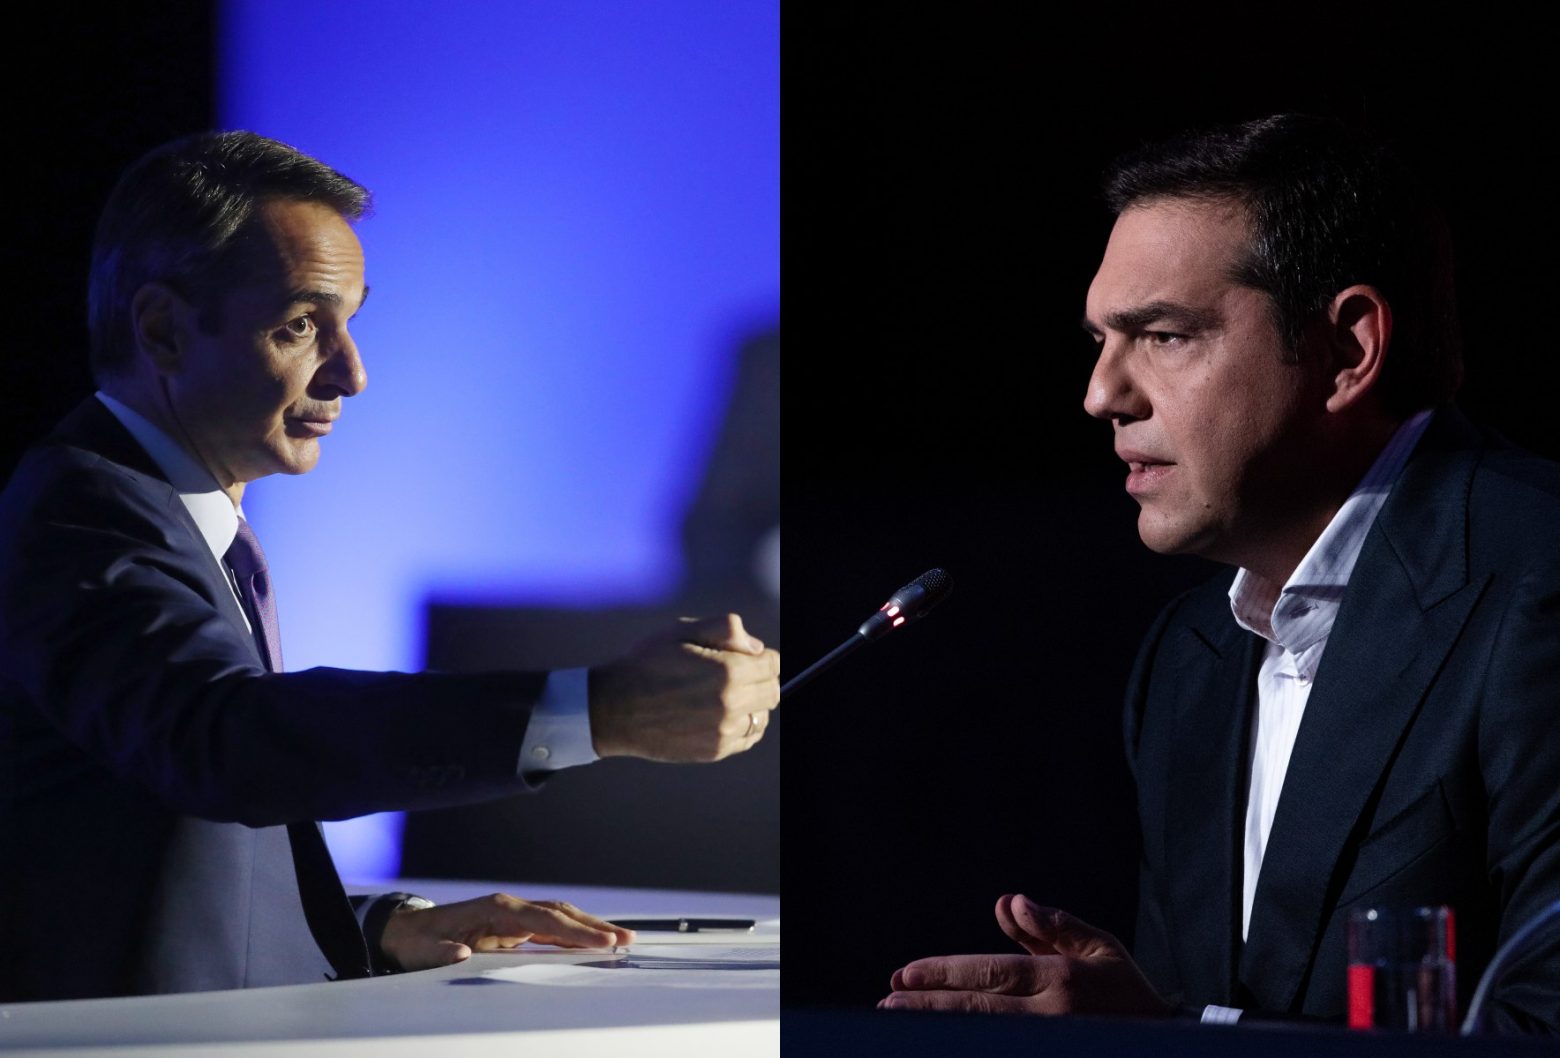 Δημοσκόπηση - Μητσοτάκης vs Τσίπρας - Ποιος αρχηγός κέρδισε στη ΔΕΘ